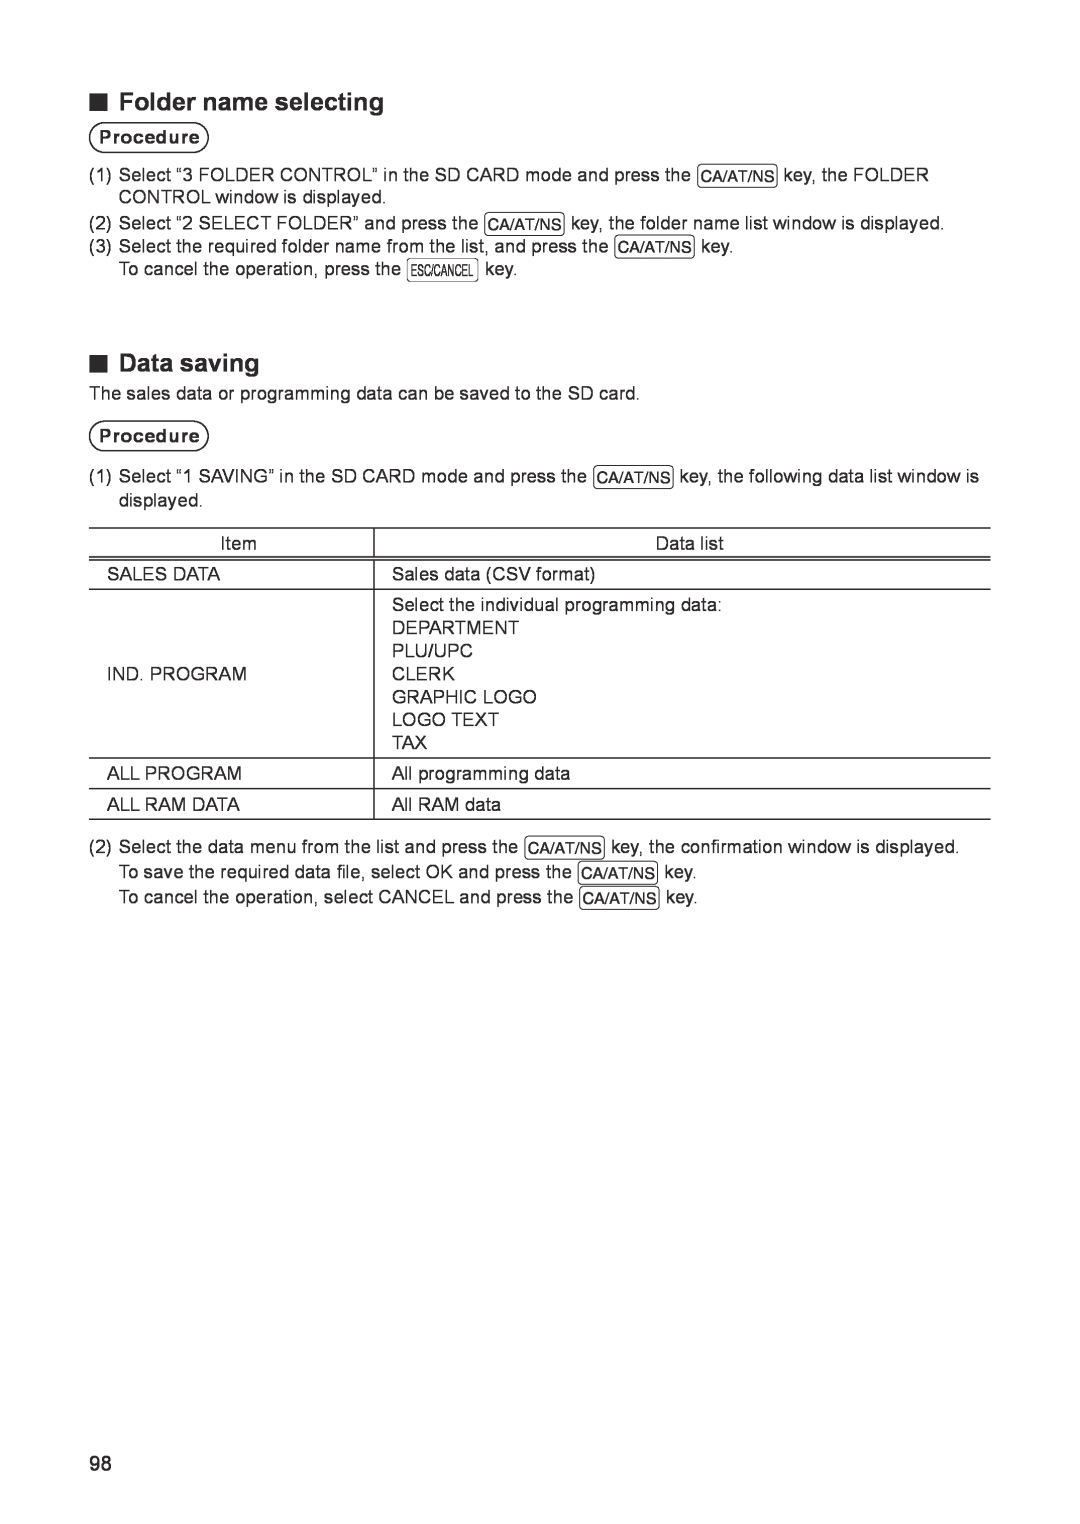 Sharp ER-A347A instruction manual Folder name selecting, Data saving, Procedure 